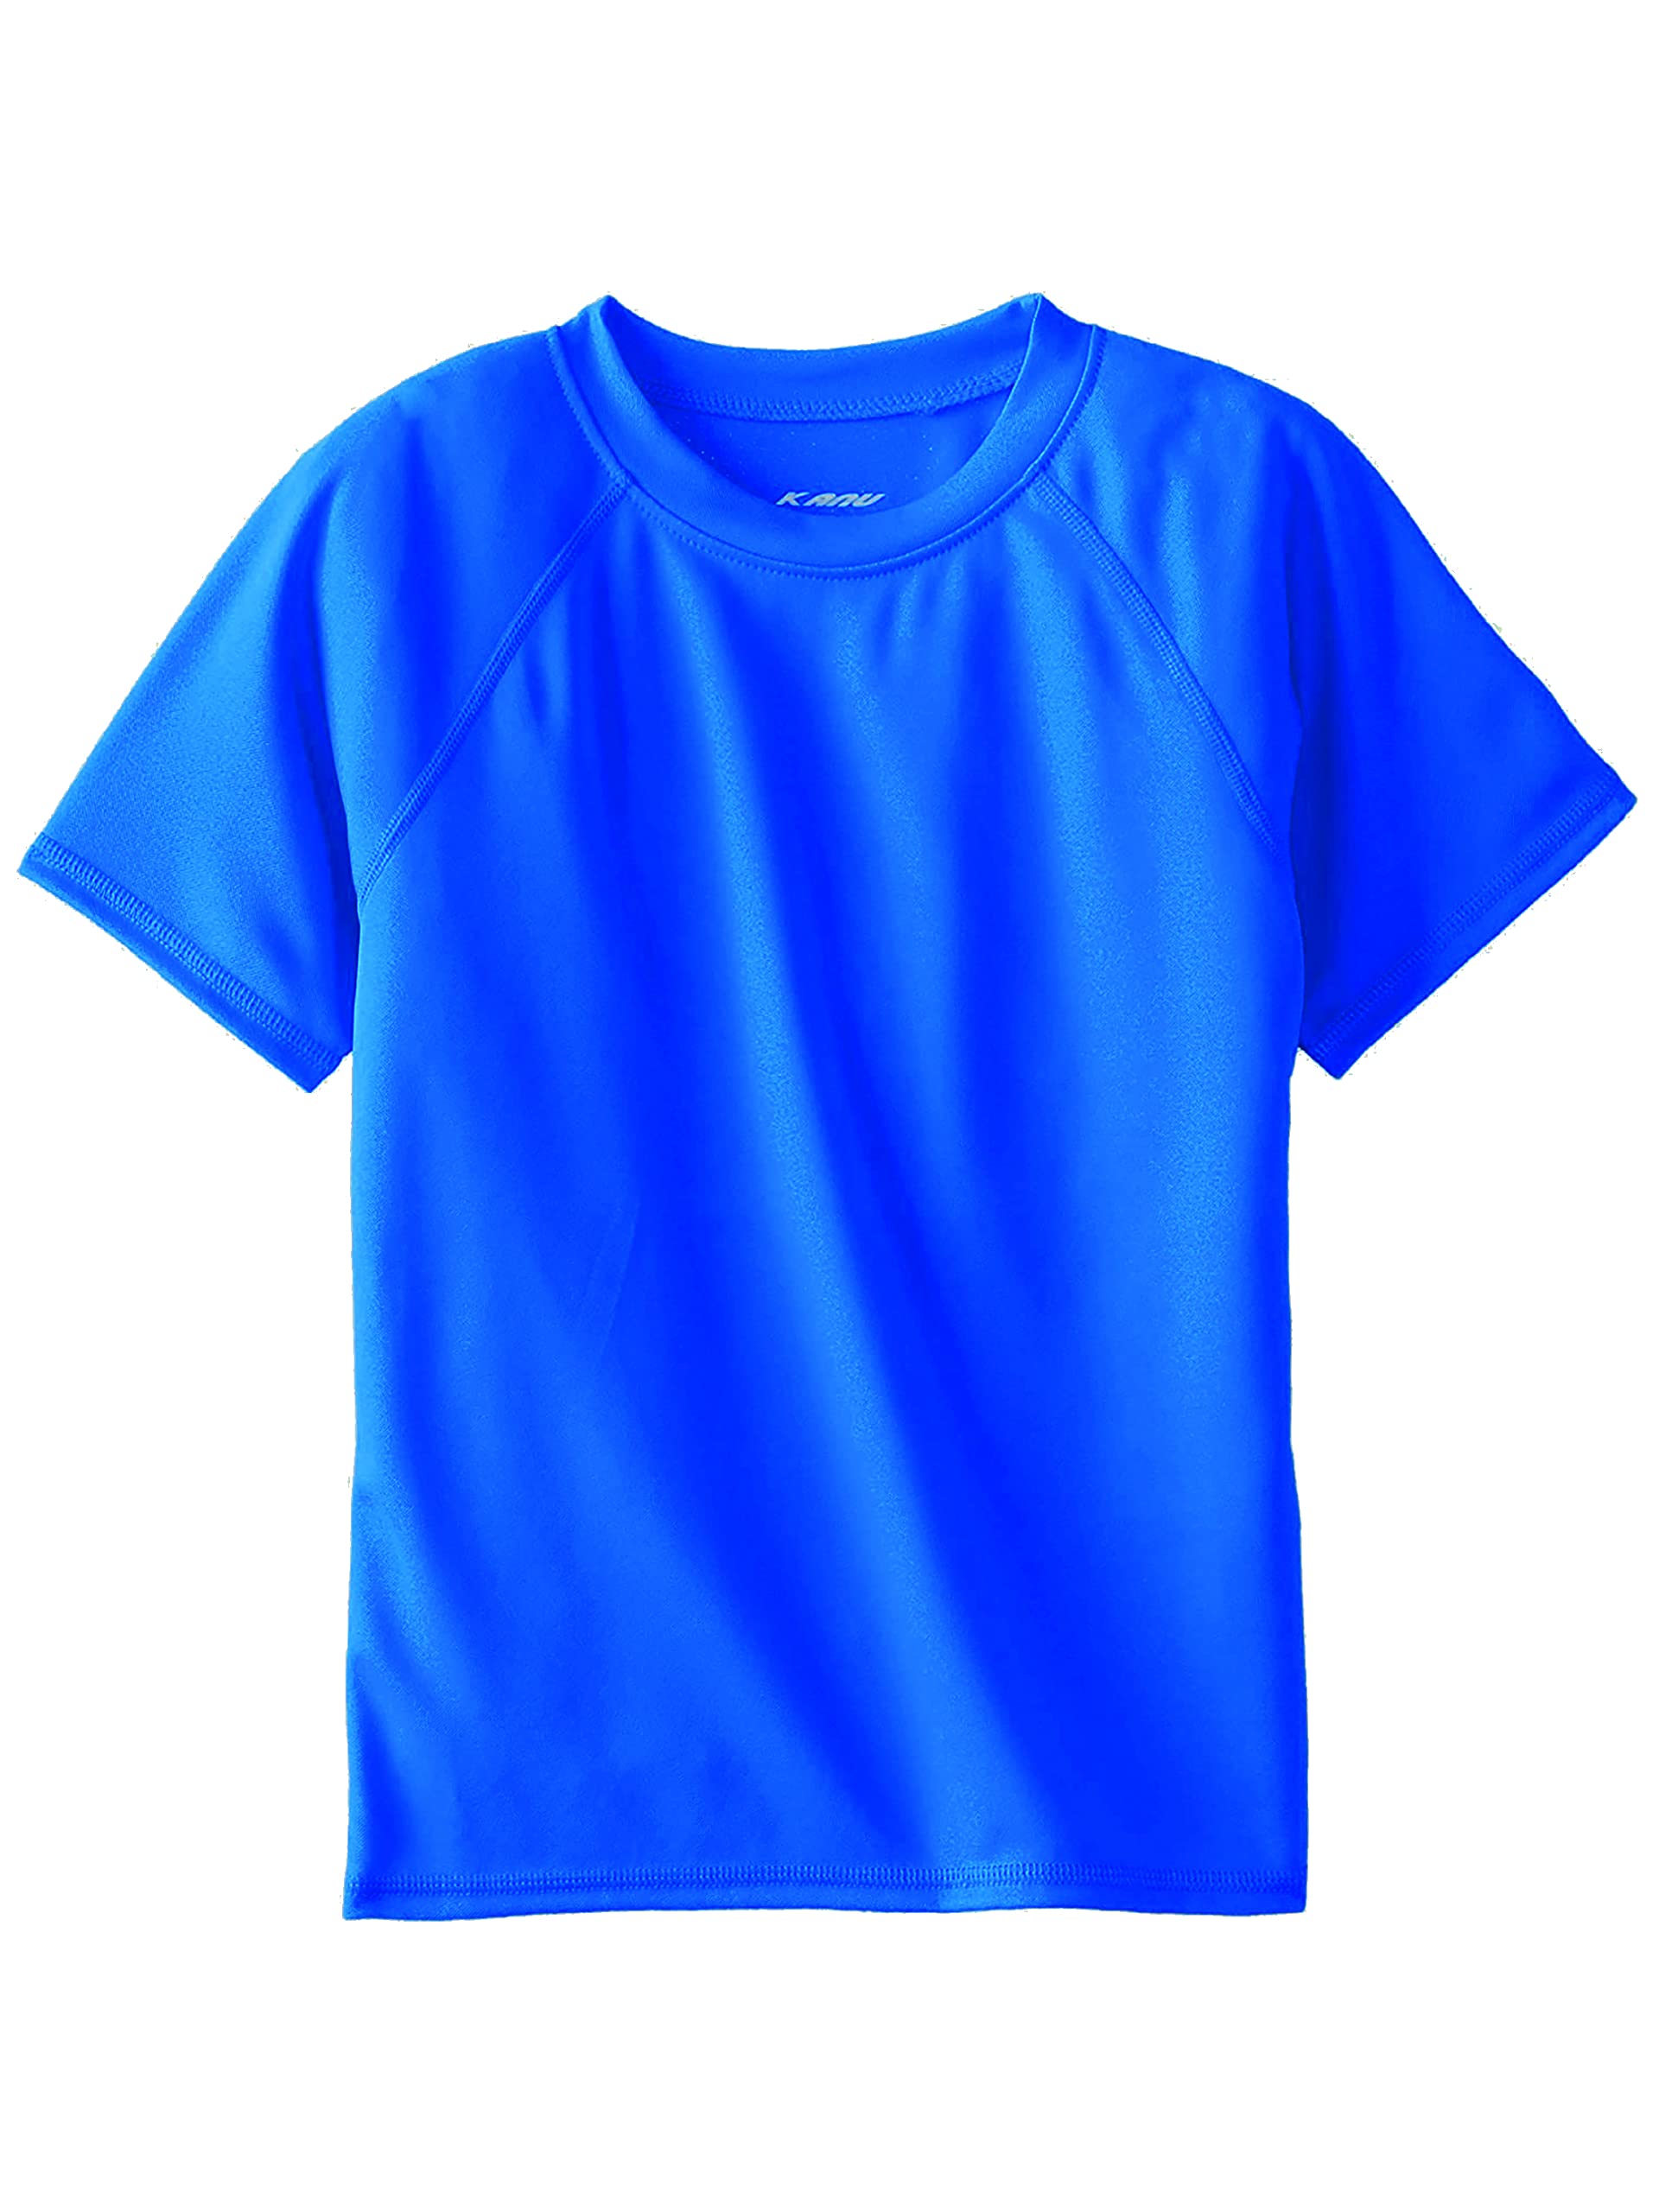 Kanu Surf Boys' Short Sleeve UPF 50+ Rashguard Swim Shirt